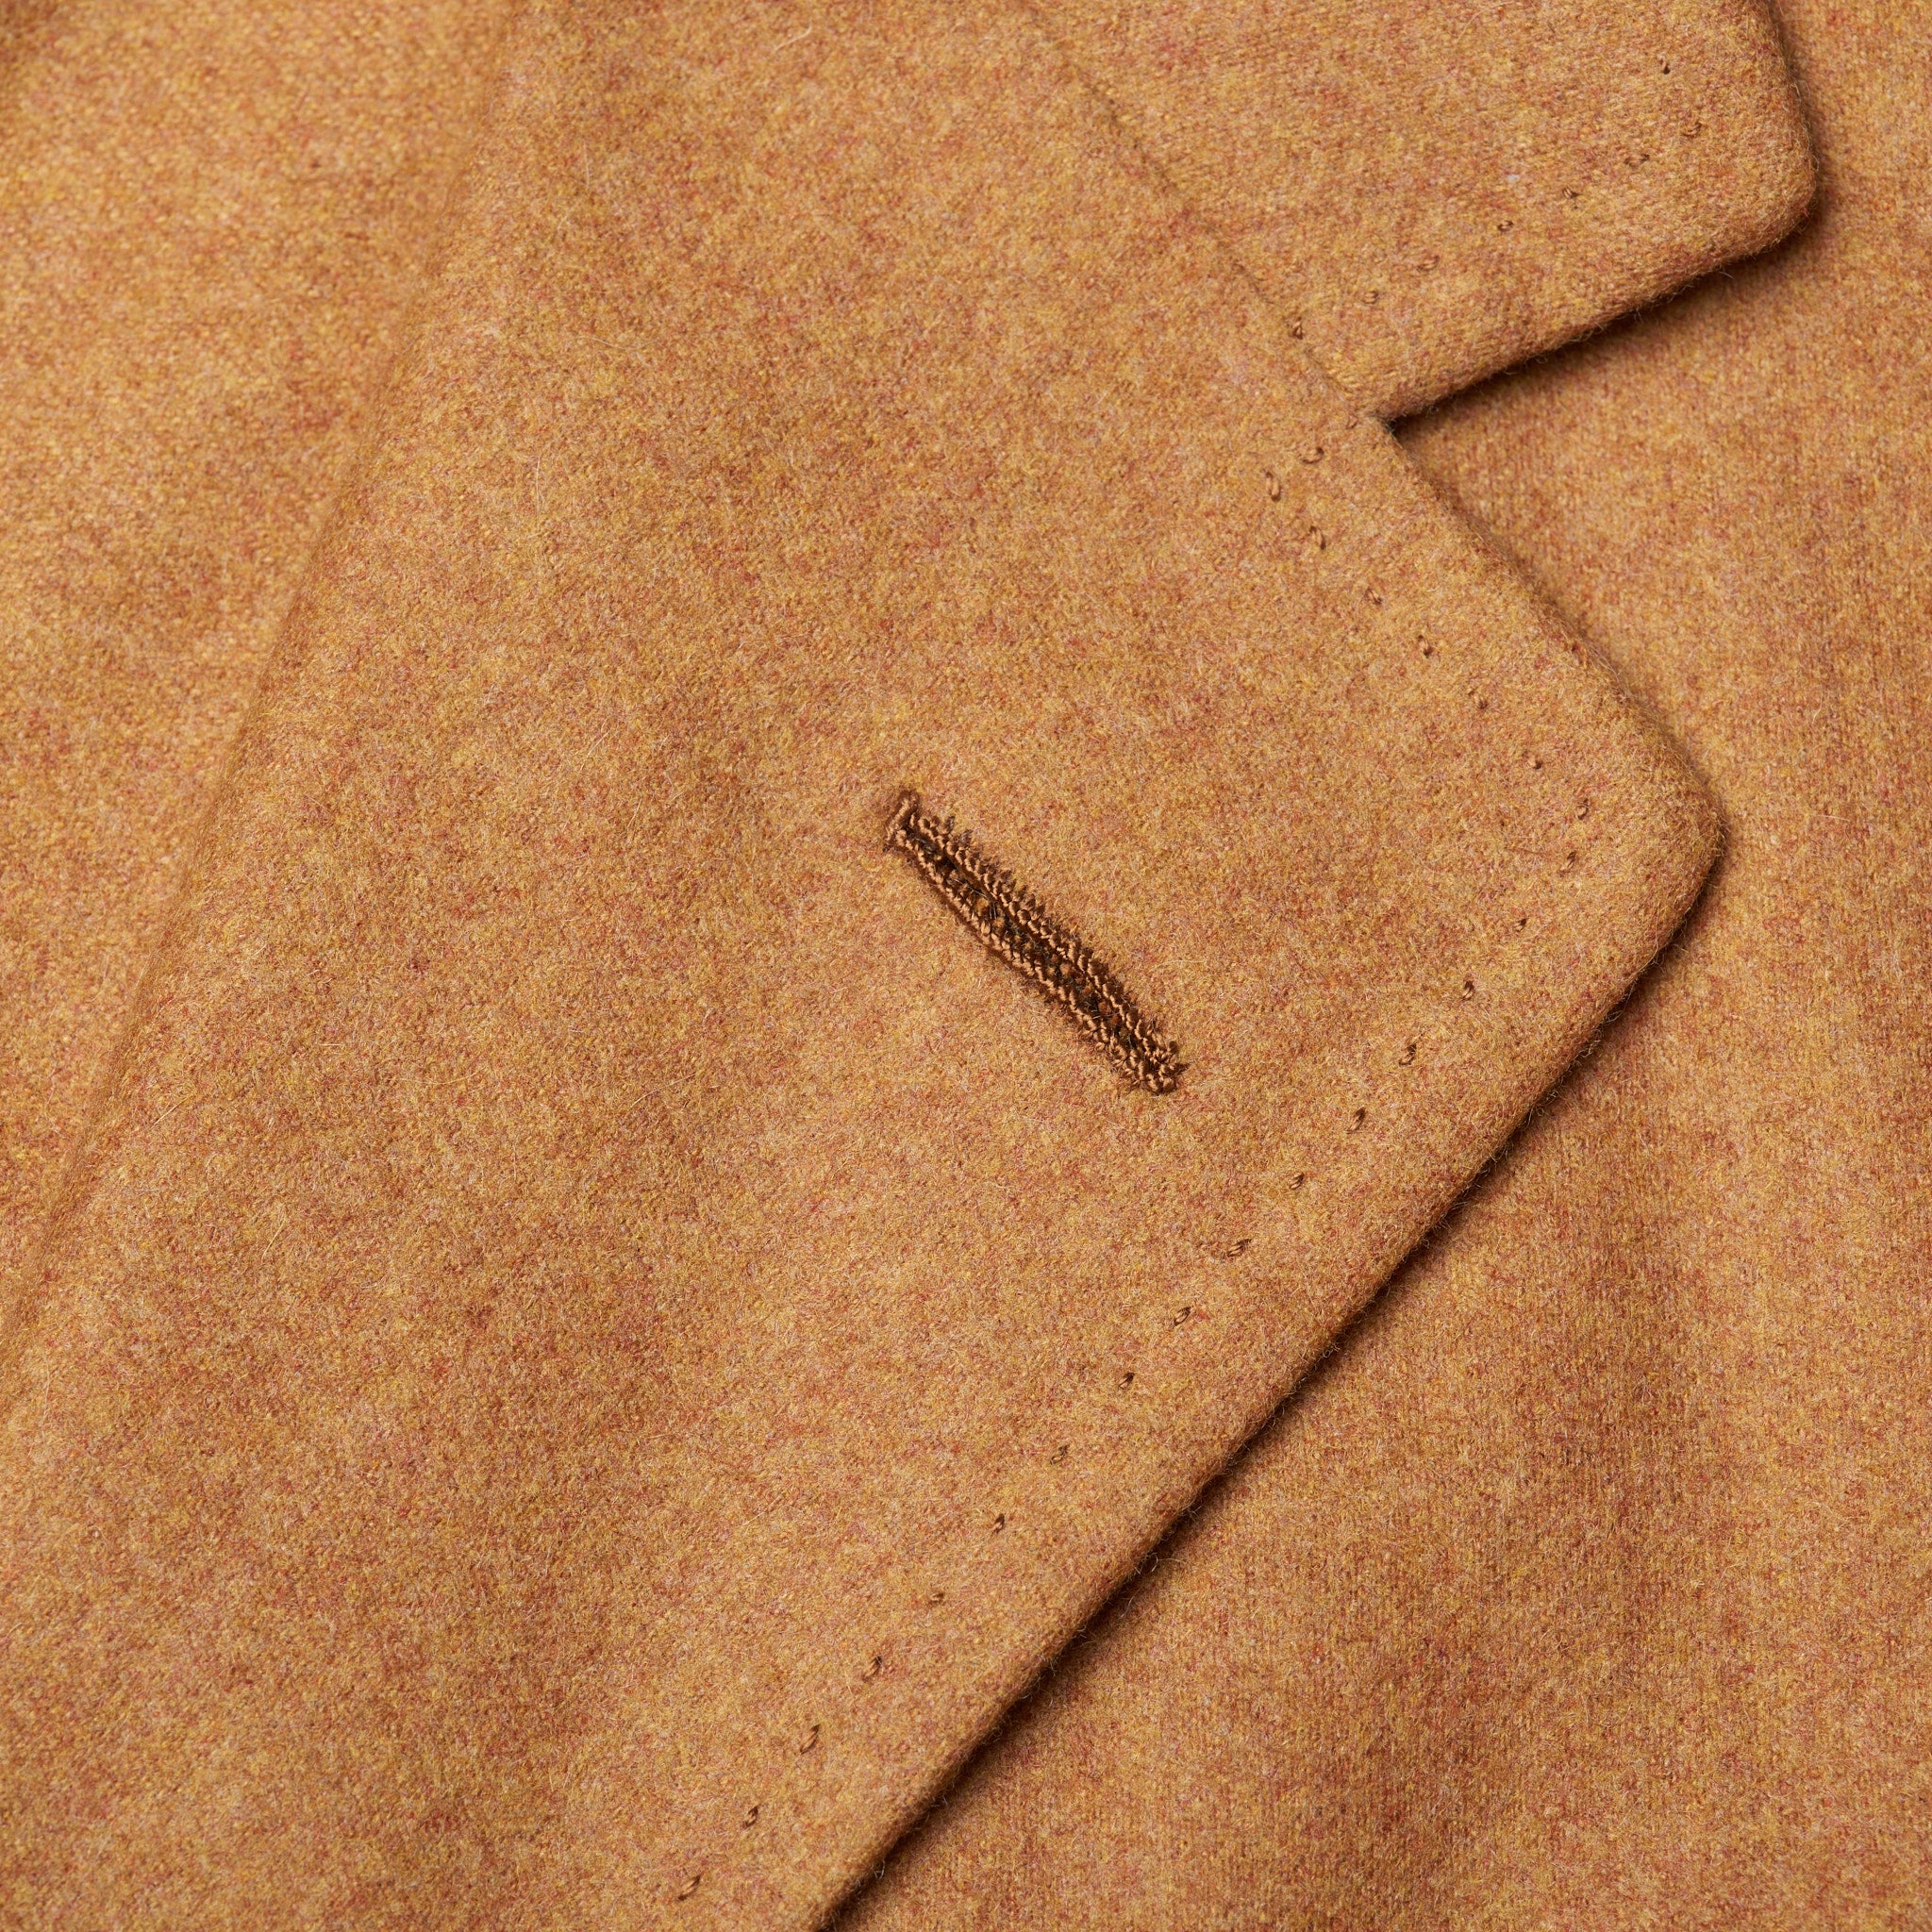 D'AVENZA Handmade Tan Cashmere Unlined Suit EU 50 NEW US 40 D'AVENZA